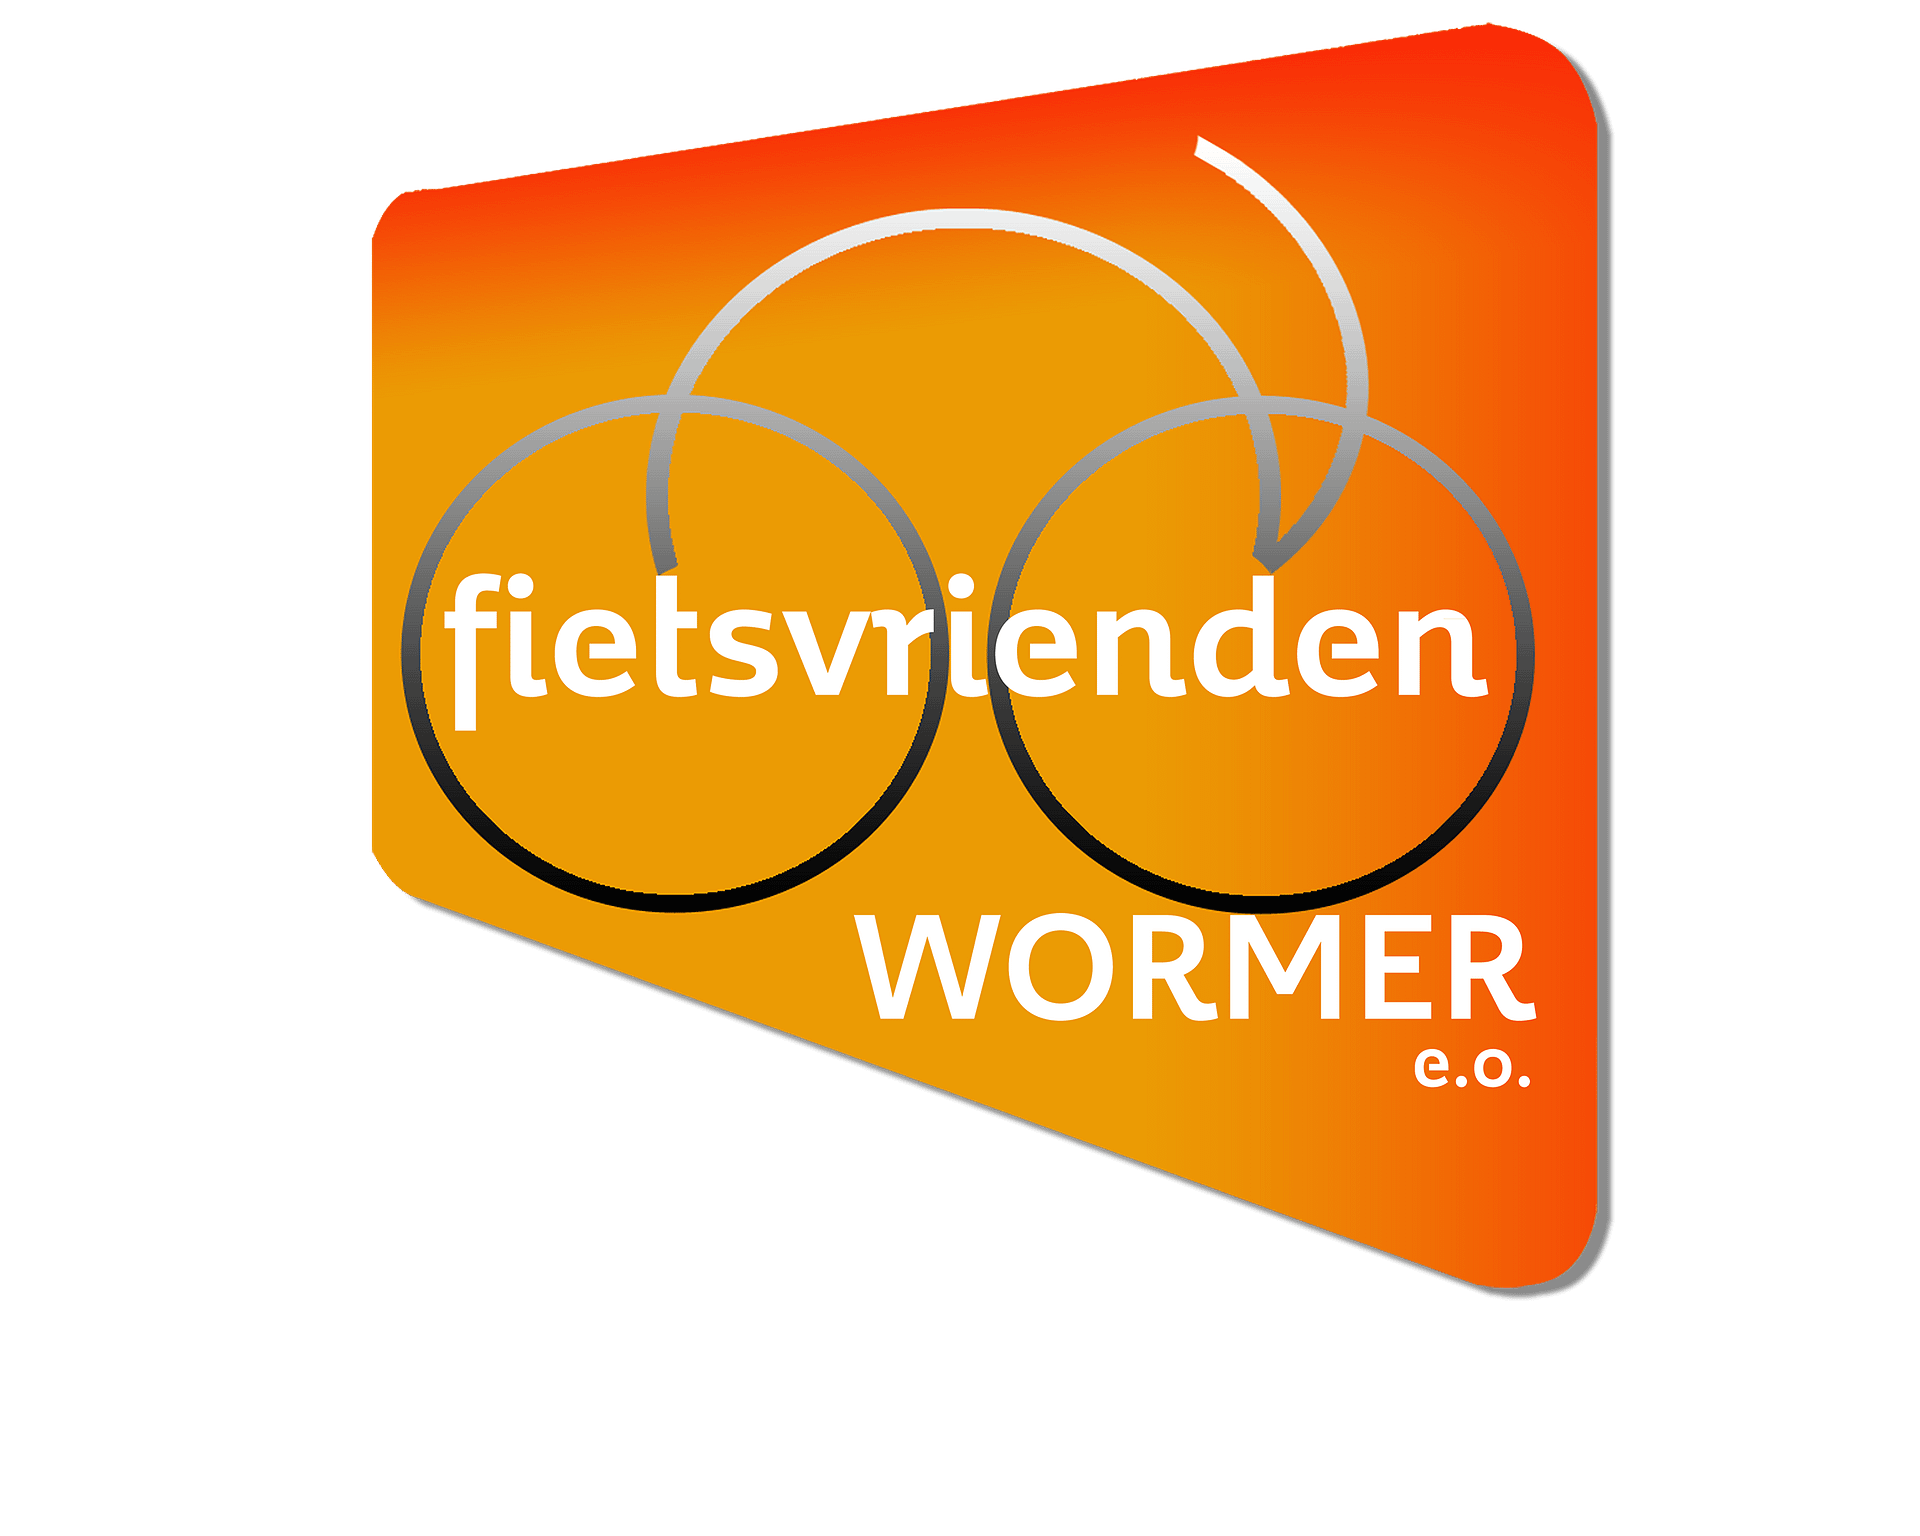 fietsvriendenwormer.nl